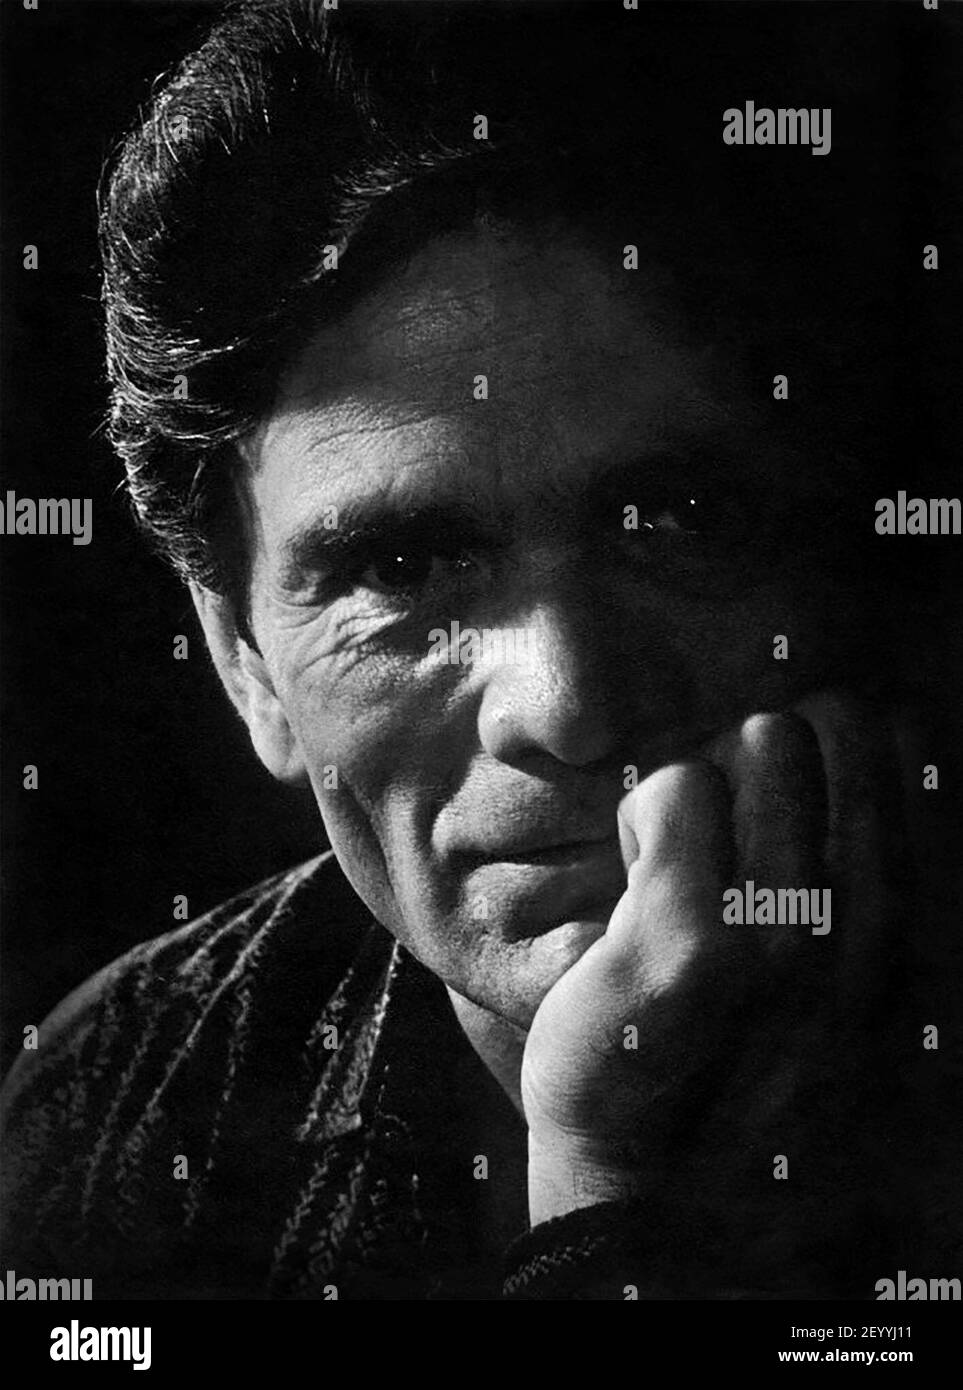 Pasolini. Portrait of the Italian film director and writer, Pier Paolo Pasolini (1922-1975), 1962 Stock Photo